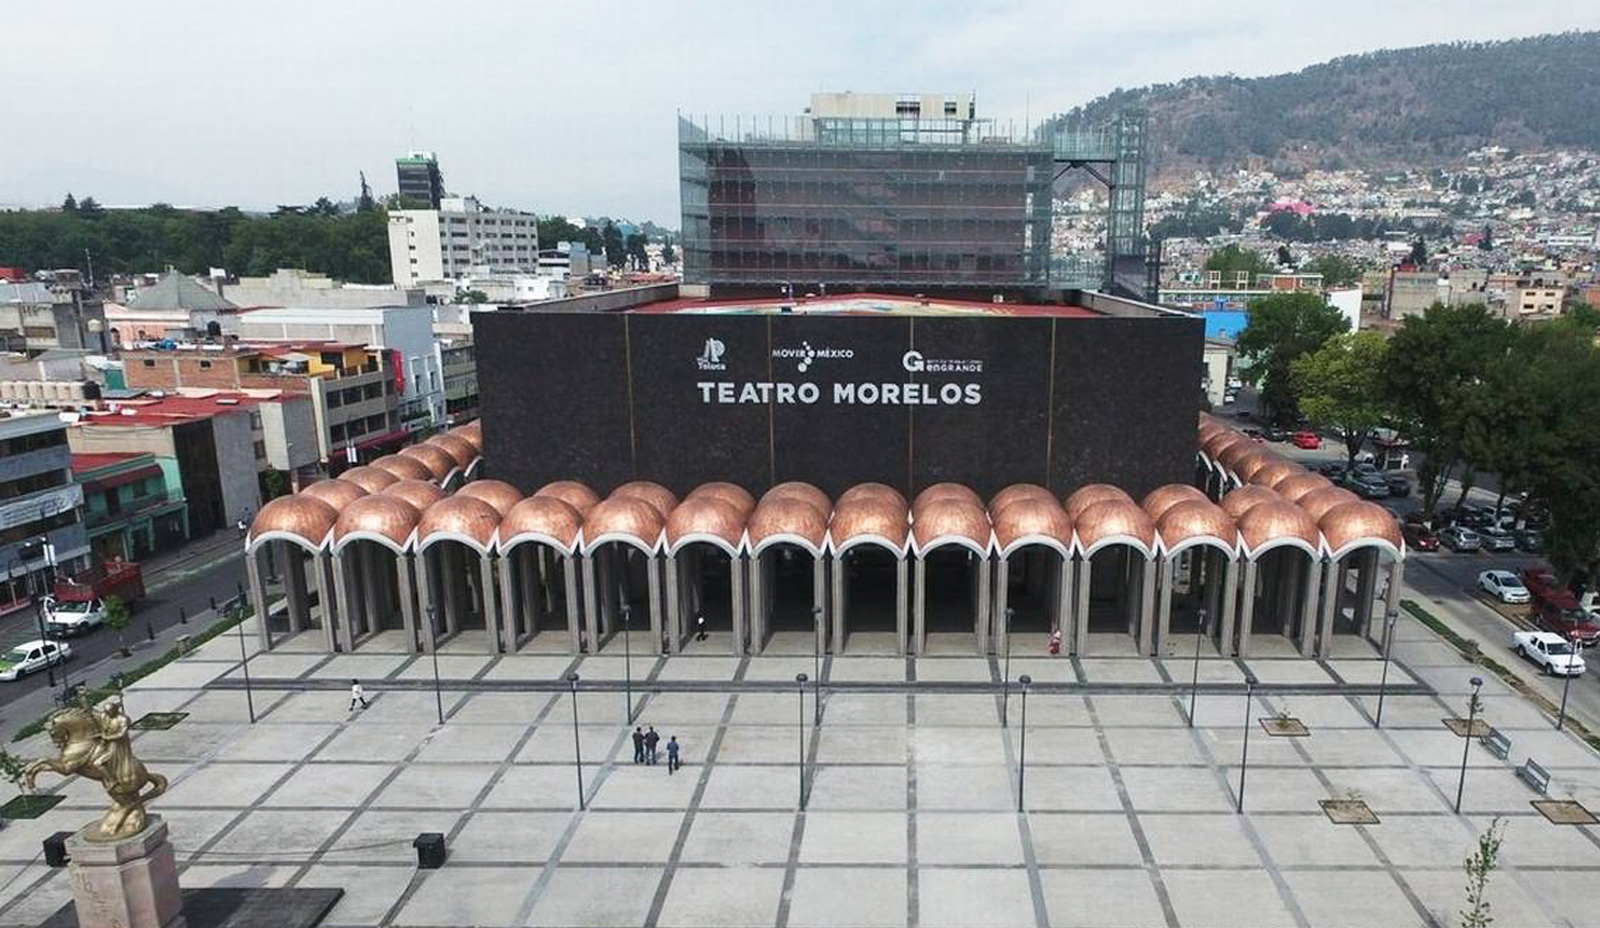 Teatro Morelos Toluca, Mármoles Everstone participó en la remodelación